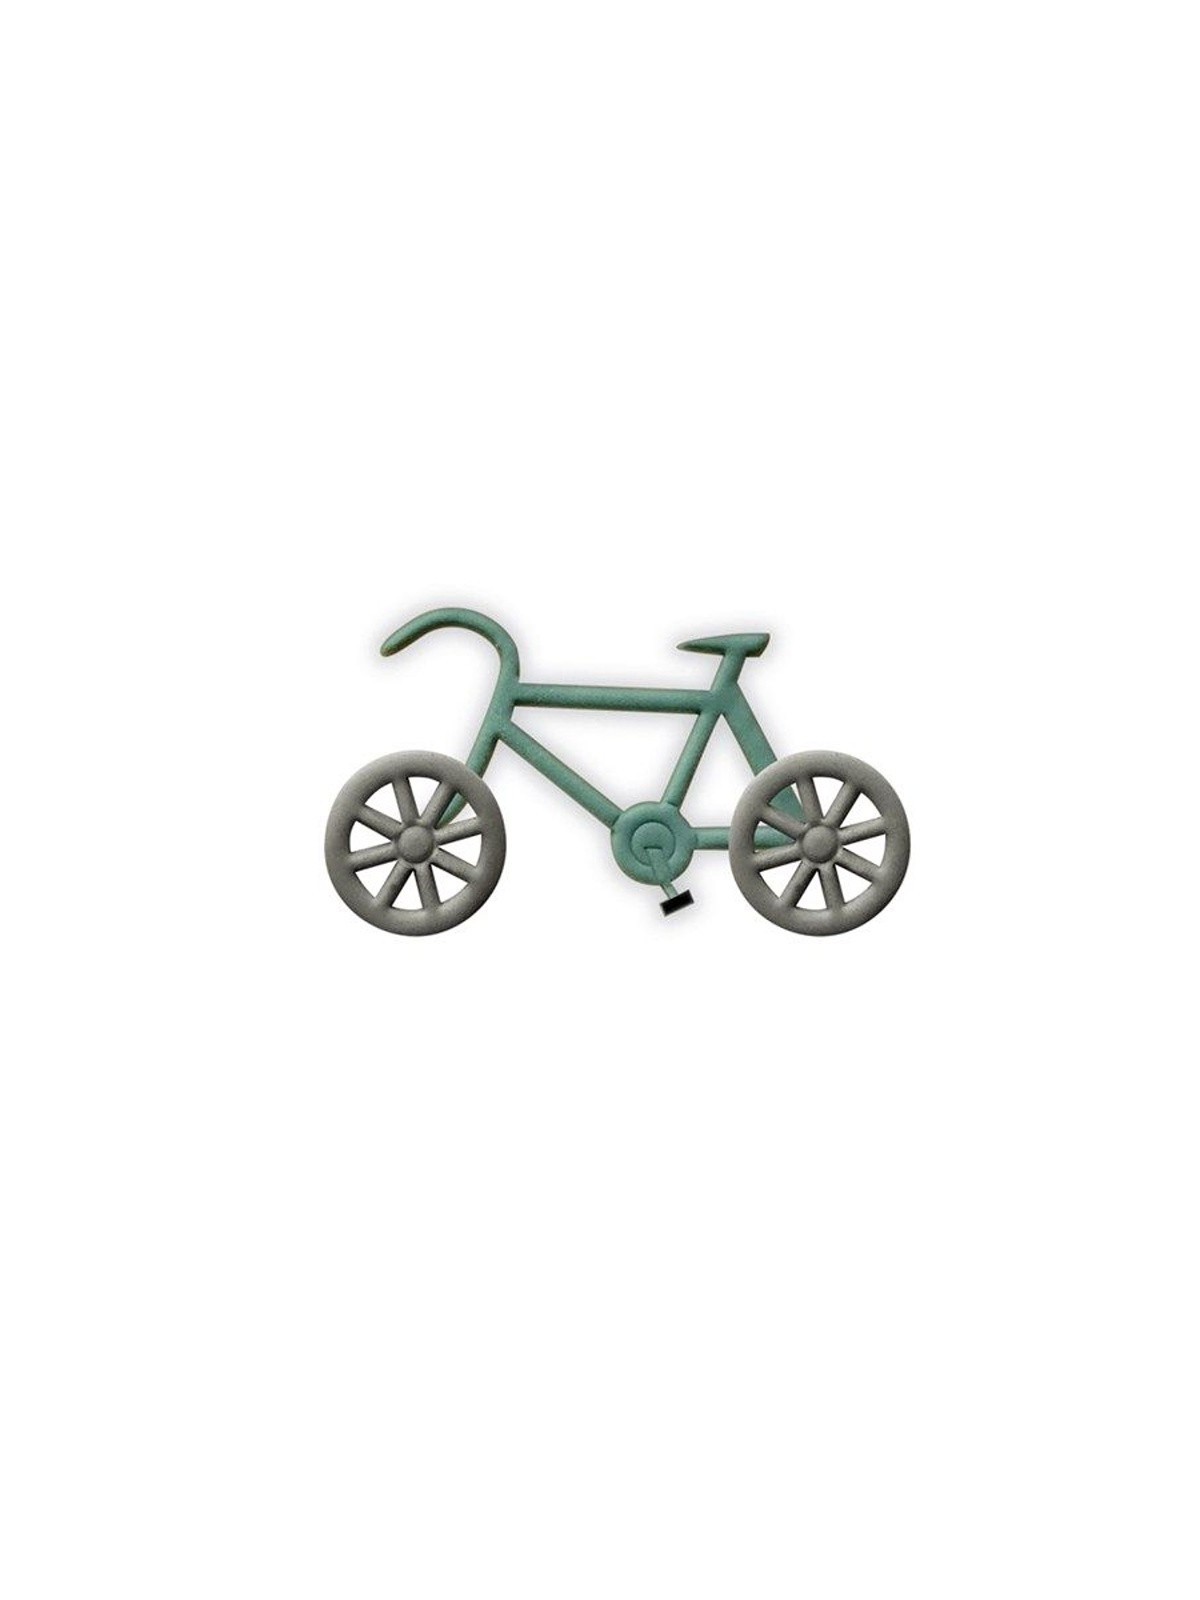 Vykrajovátka - bicykl - 2ks